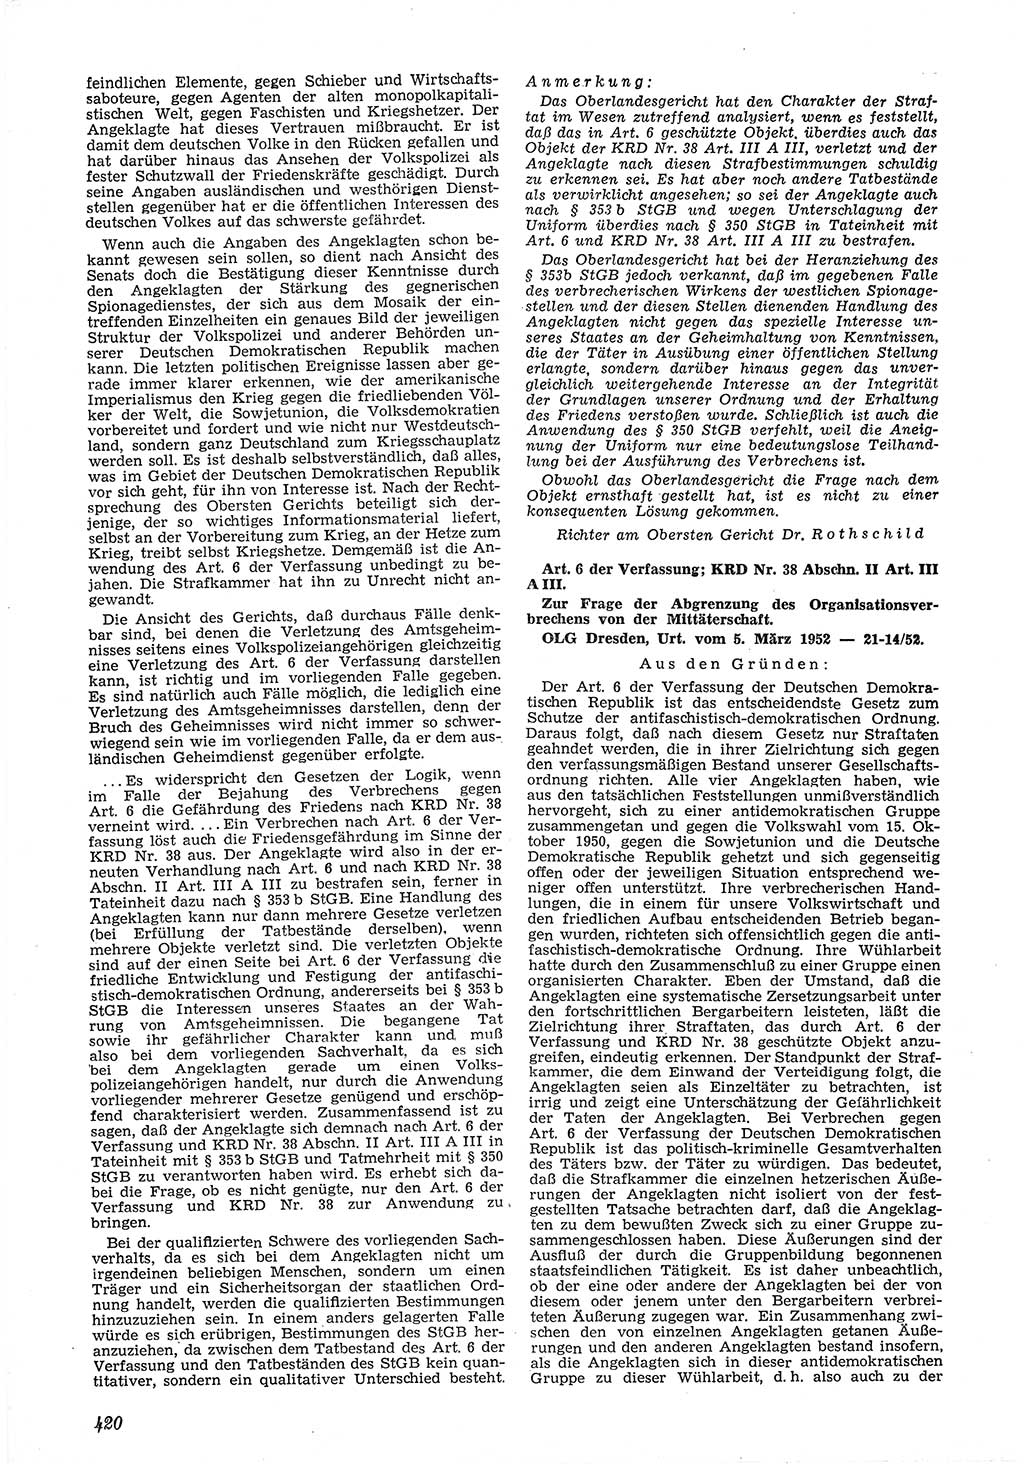 Neue Justiz (NJ), Zeitschrift für Recht und Rechtswissenschaft [Deutsche Demokratische Republik (DDR)], 6. Jahrgang 1952, Seite 420 (NJ DDR 1952, S. 420)